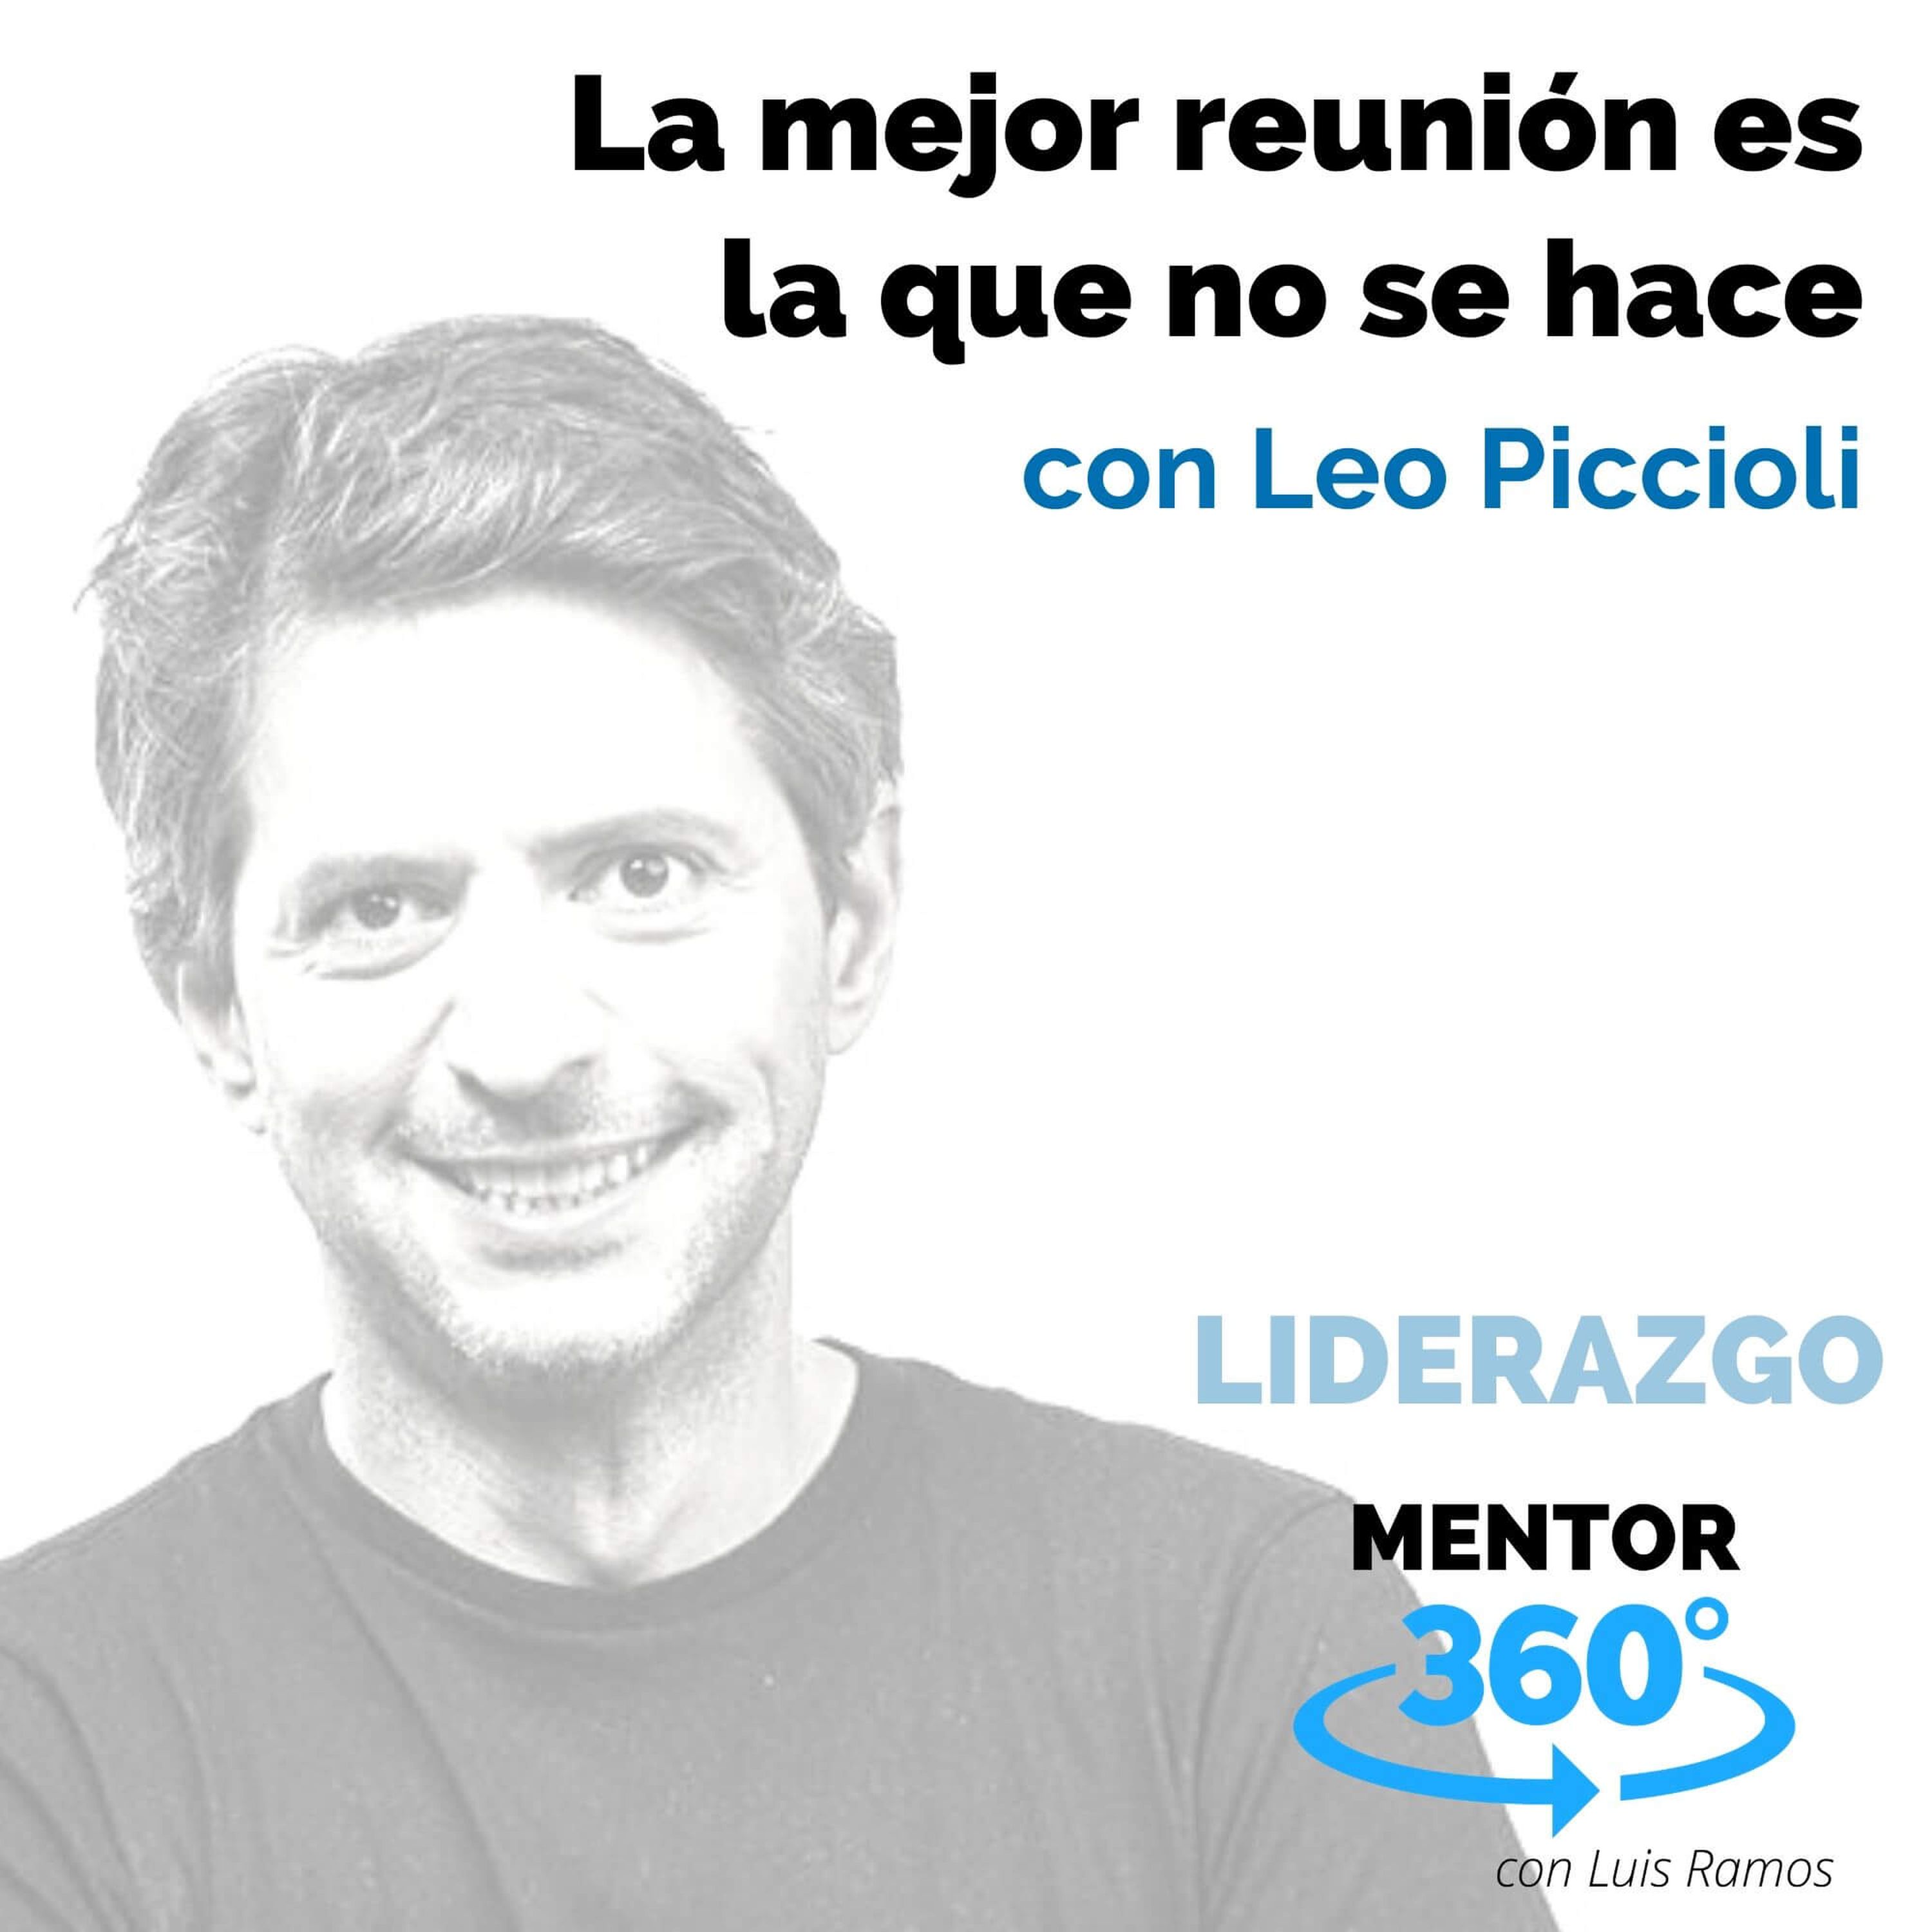 La mejor reunión es la que no se hace, con Leo Piccioli - LIDERAZGO